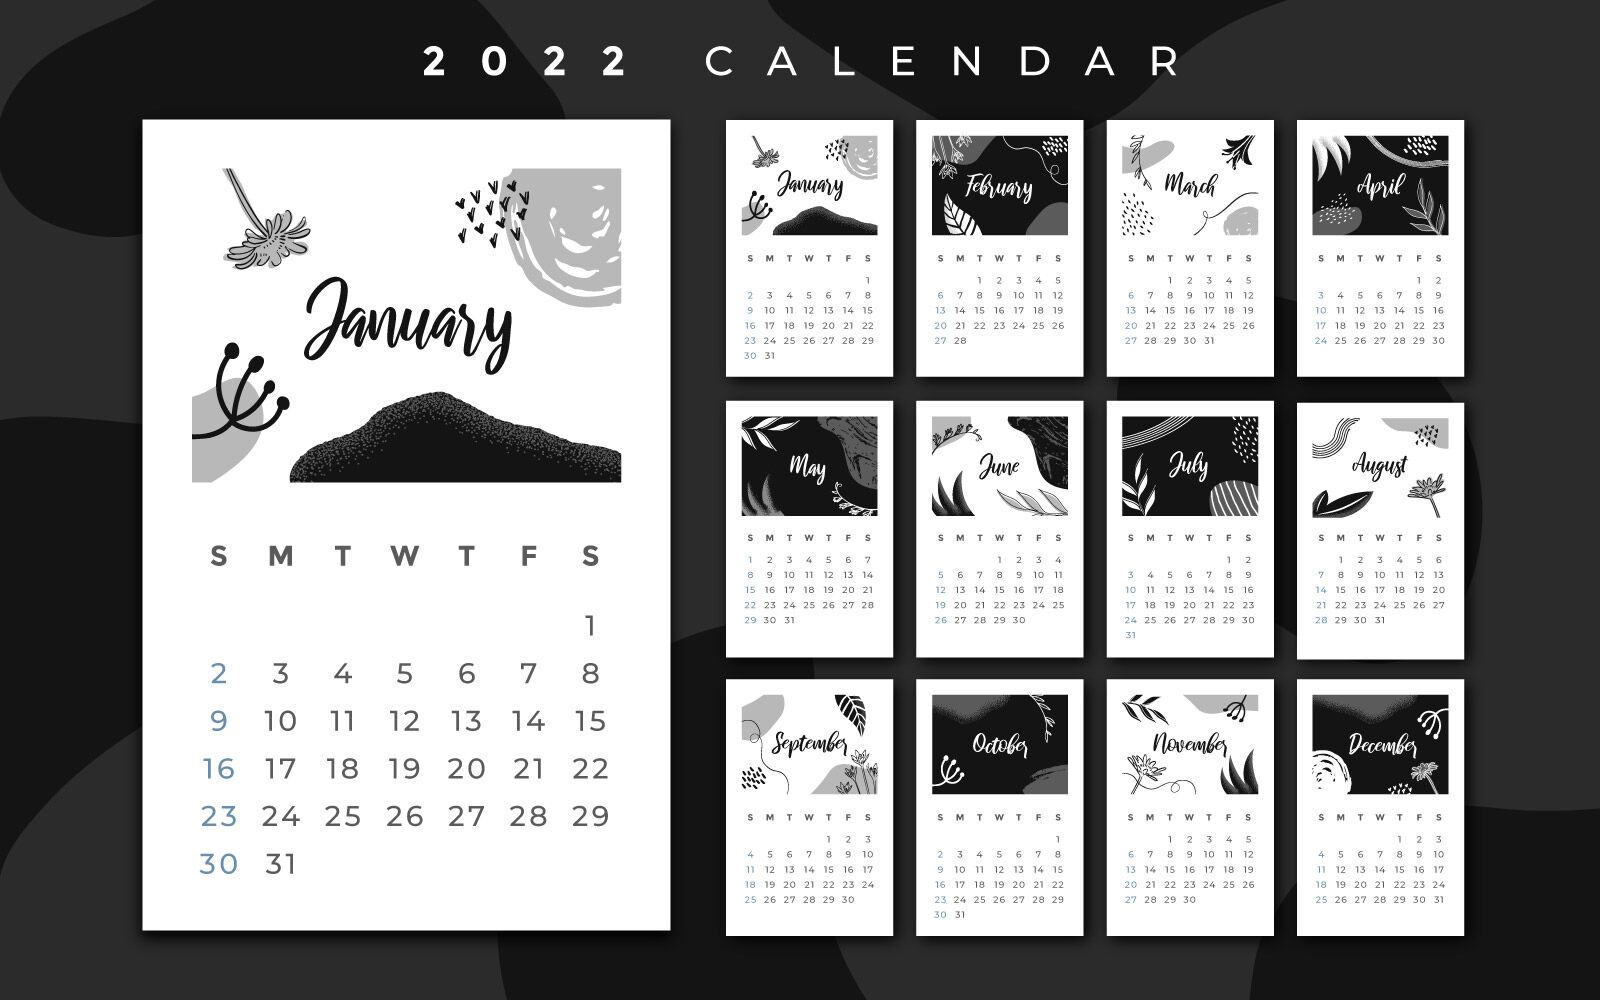 Diseño de calendario 2022 en blanco y negro